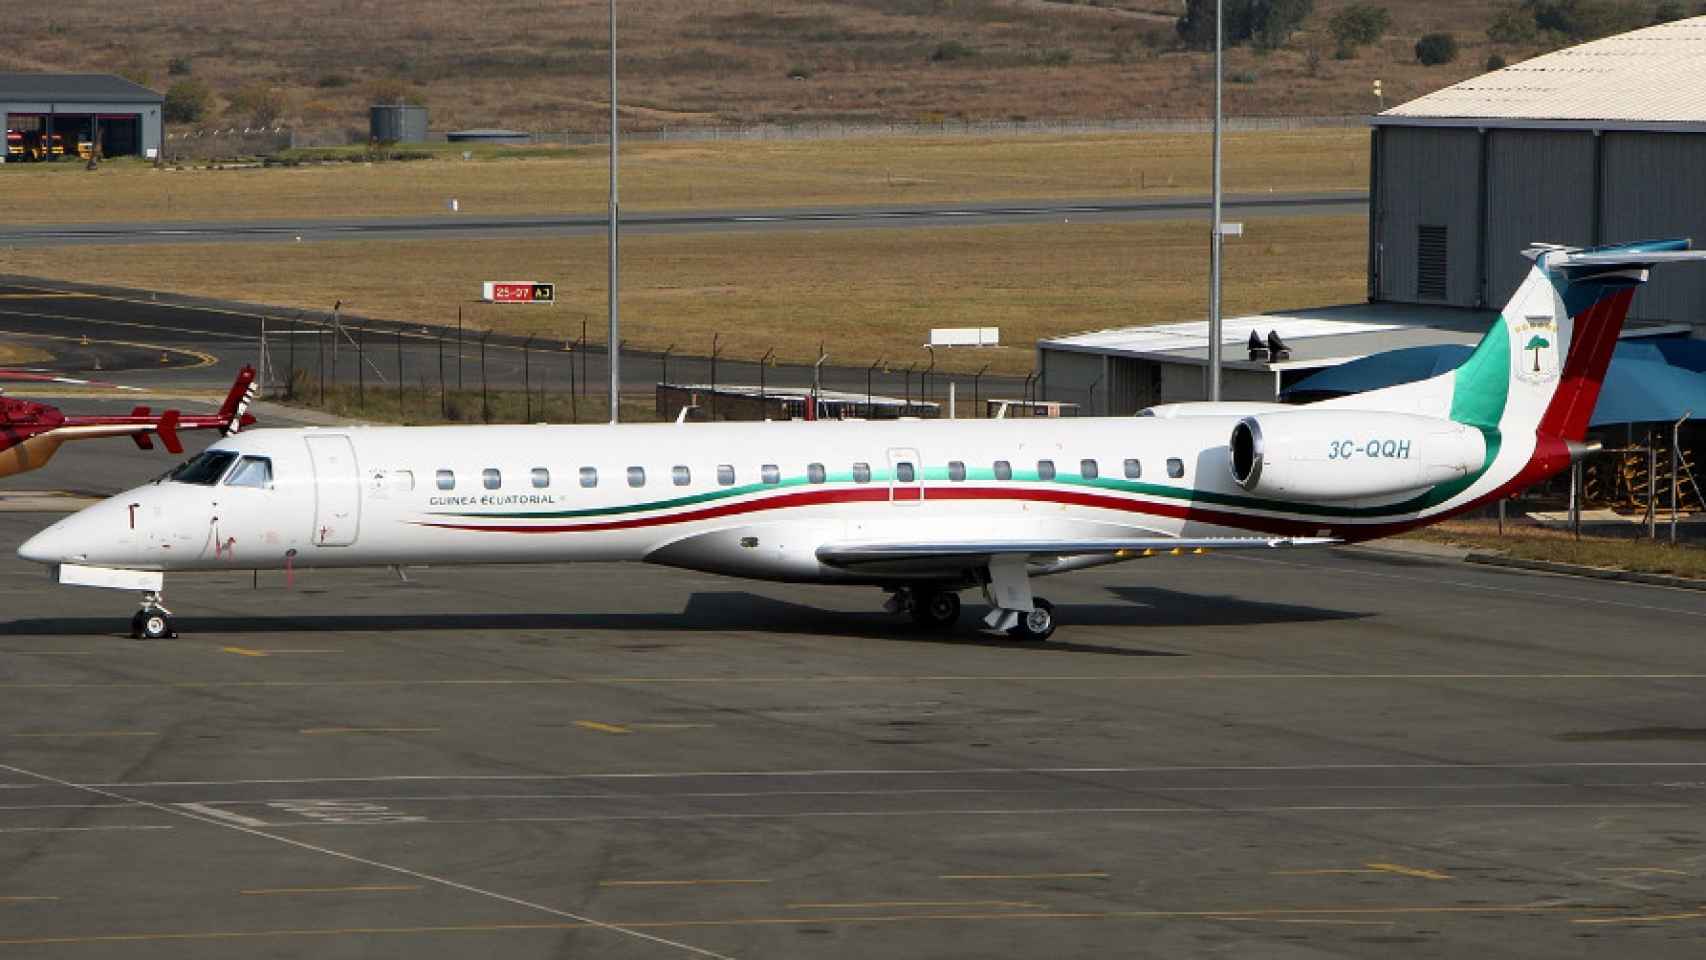 El avión oficial de Guinea Ecuatorial usado en el supuesto secuestro.